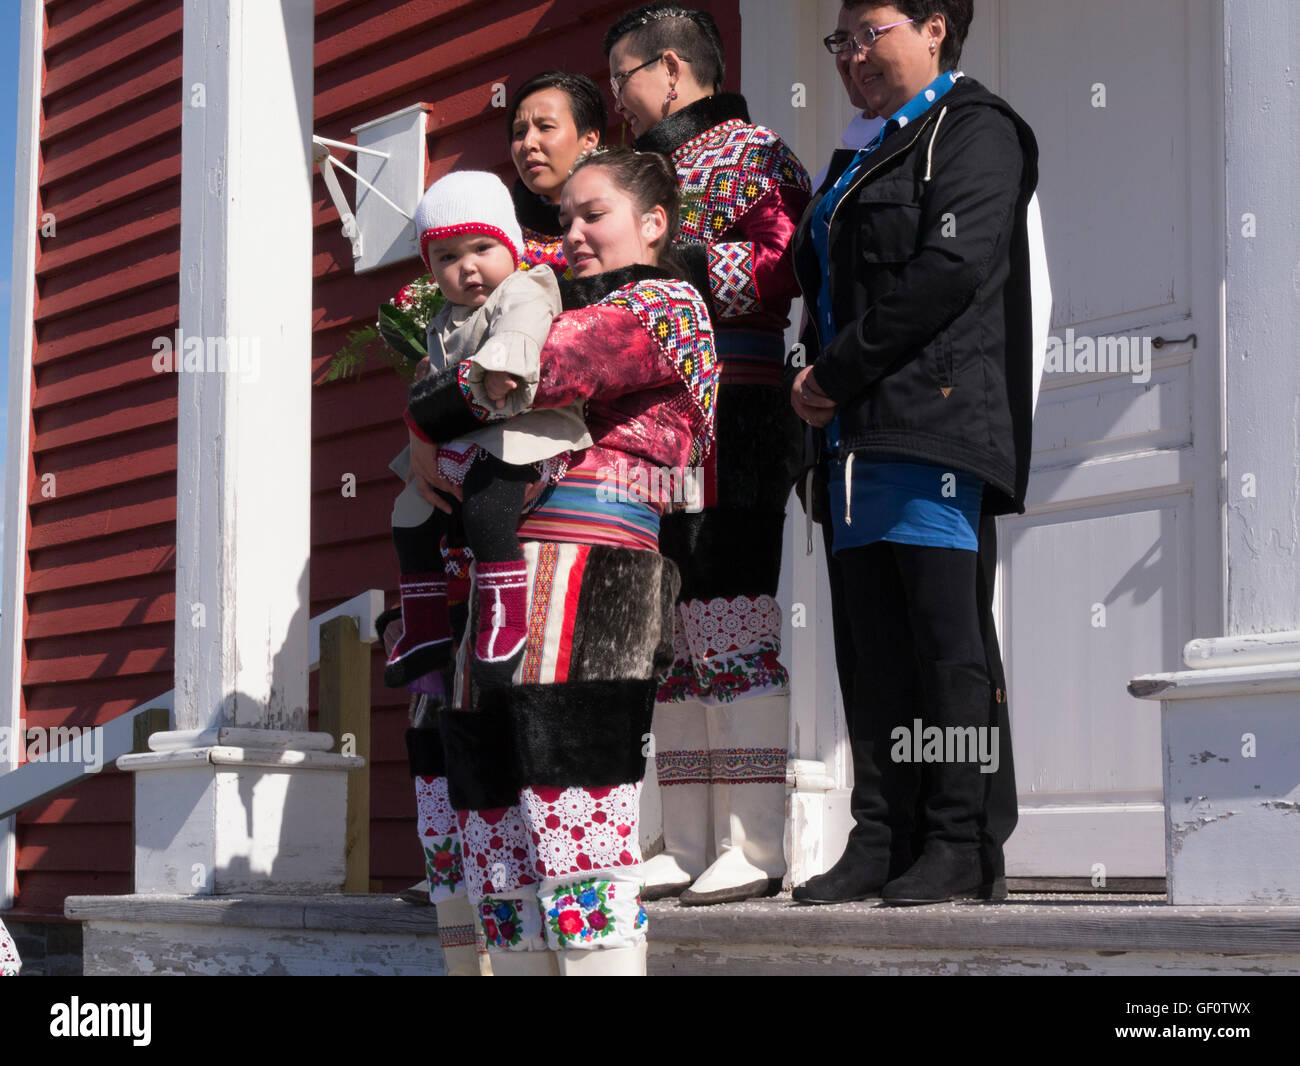 Fotos de boda gay siguiente ceremonia de matrimonio de dos mujeres en la iglesia catedral de Nuestro Salvador Nuuk (Groenlandia Foto de stock